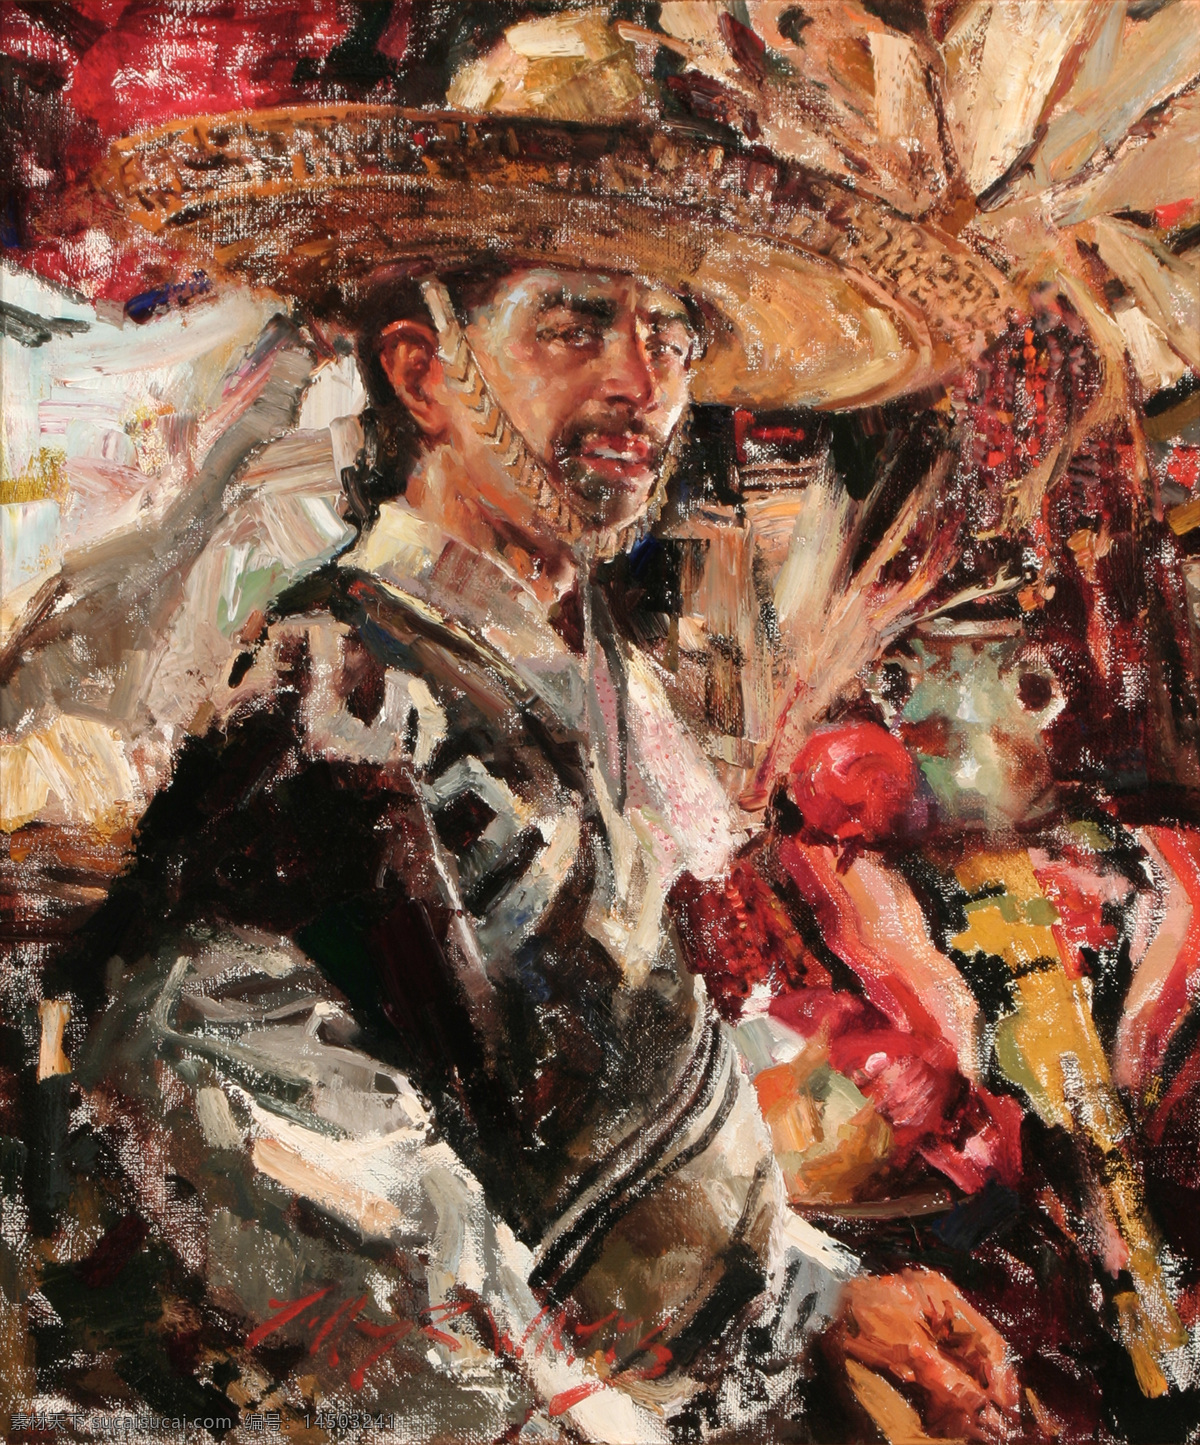 墨西哥 男人 油画 肖像 男性肖像 油画人物 西方 人物 写生 油画艺术 绘画艺术 装饰画 书画文字 文化艺术